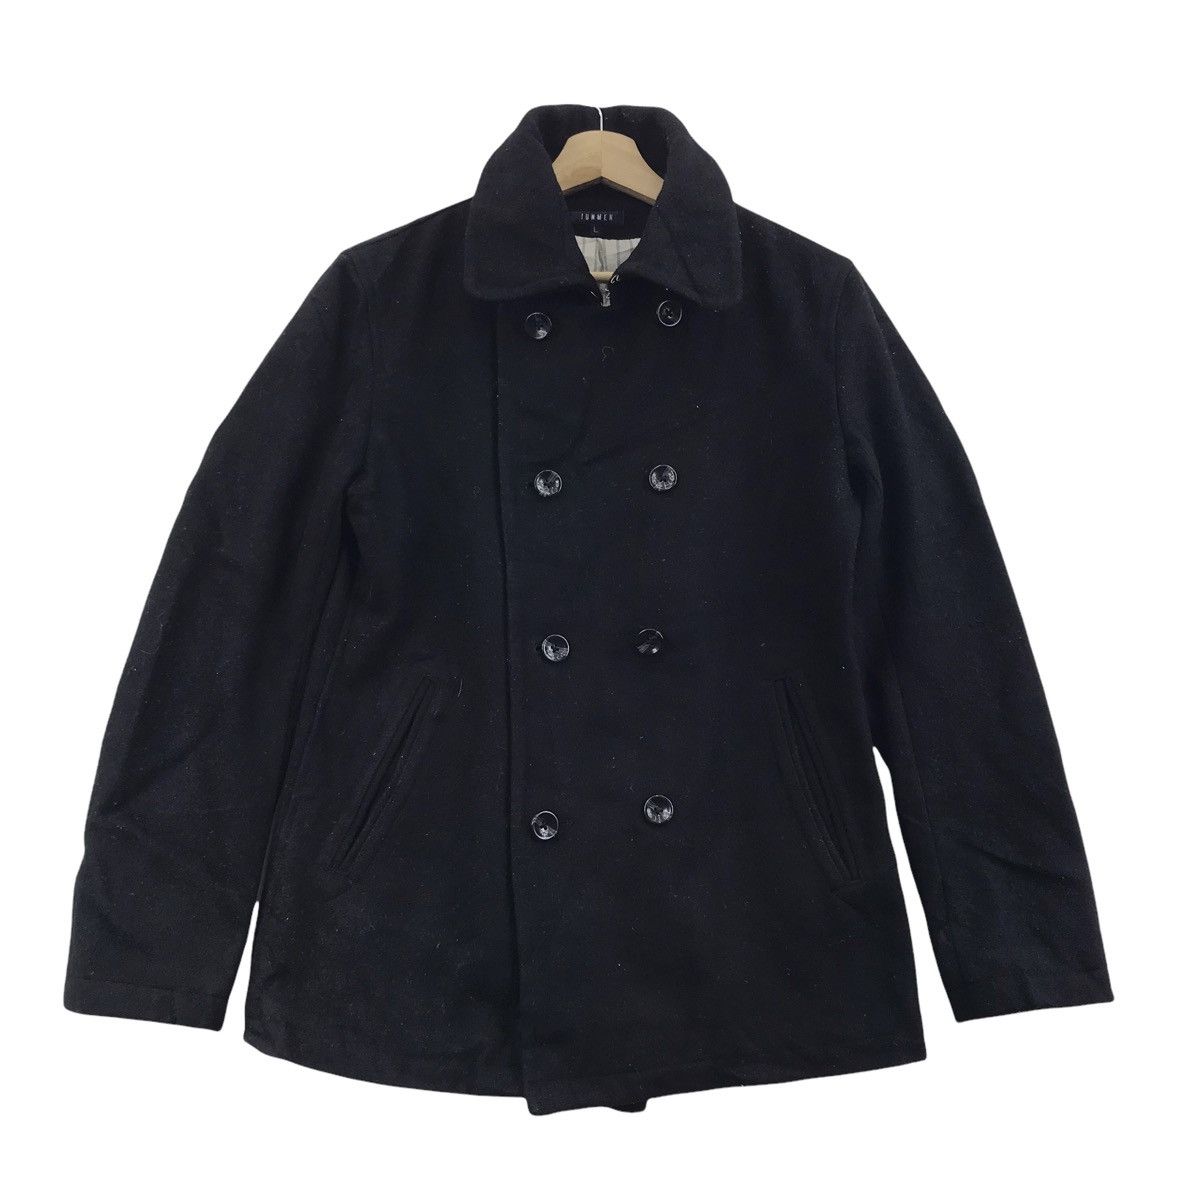 Jun Takahashi JUN MEN TAKAHASHI Japanese Brand Black Wool Coat Jacket ...